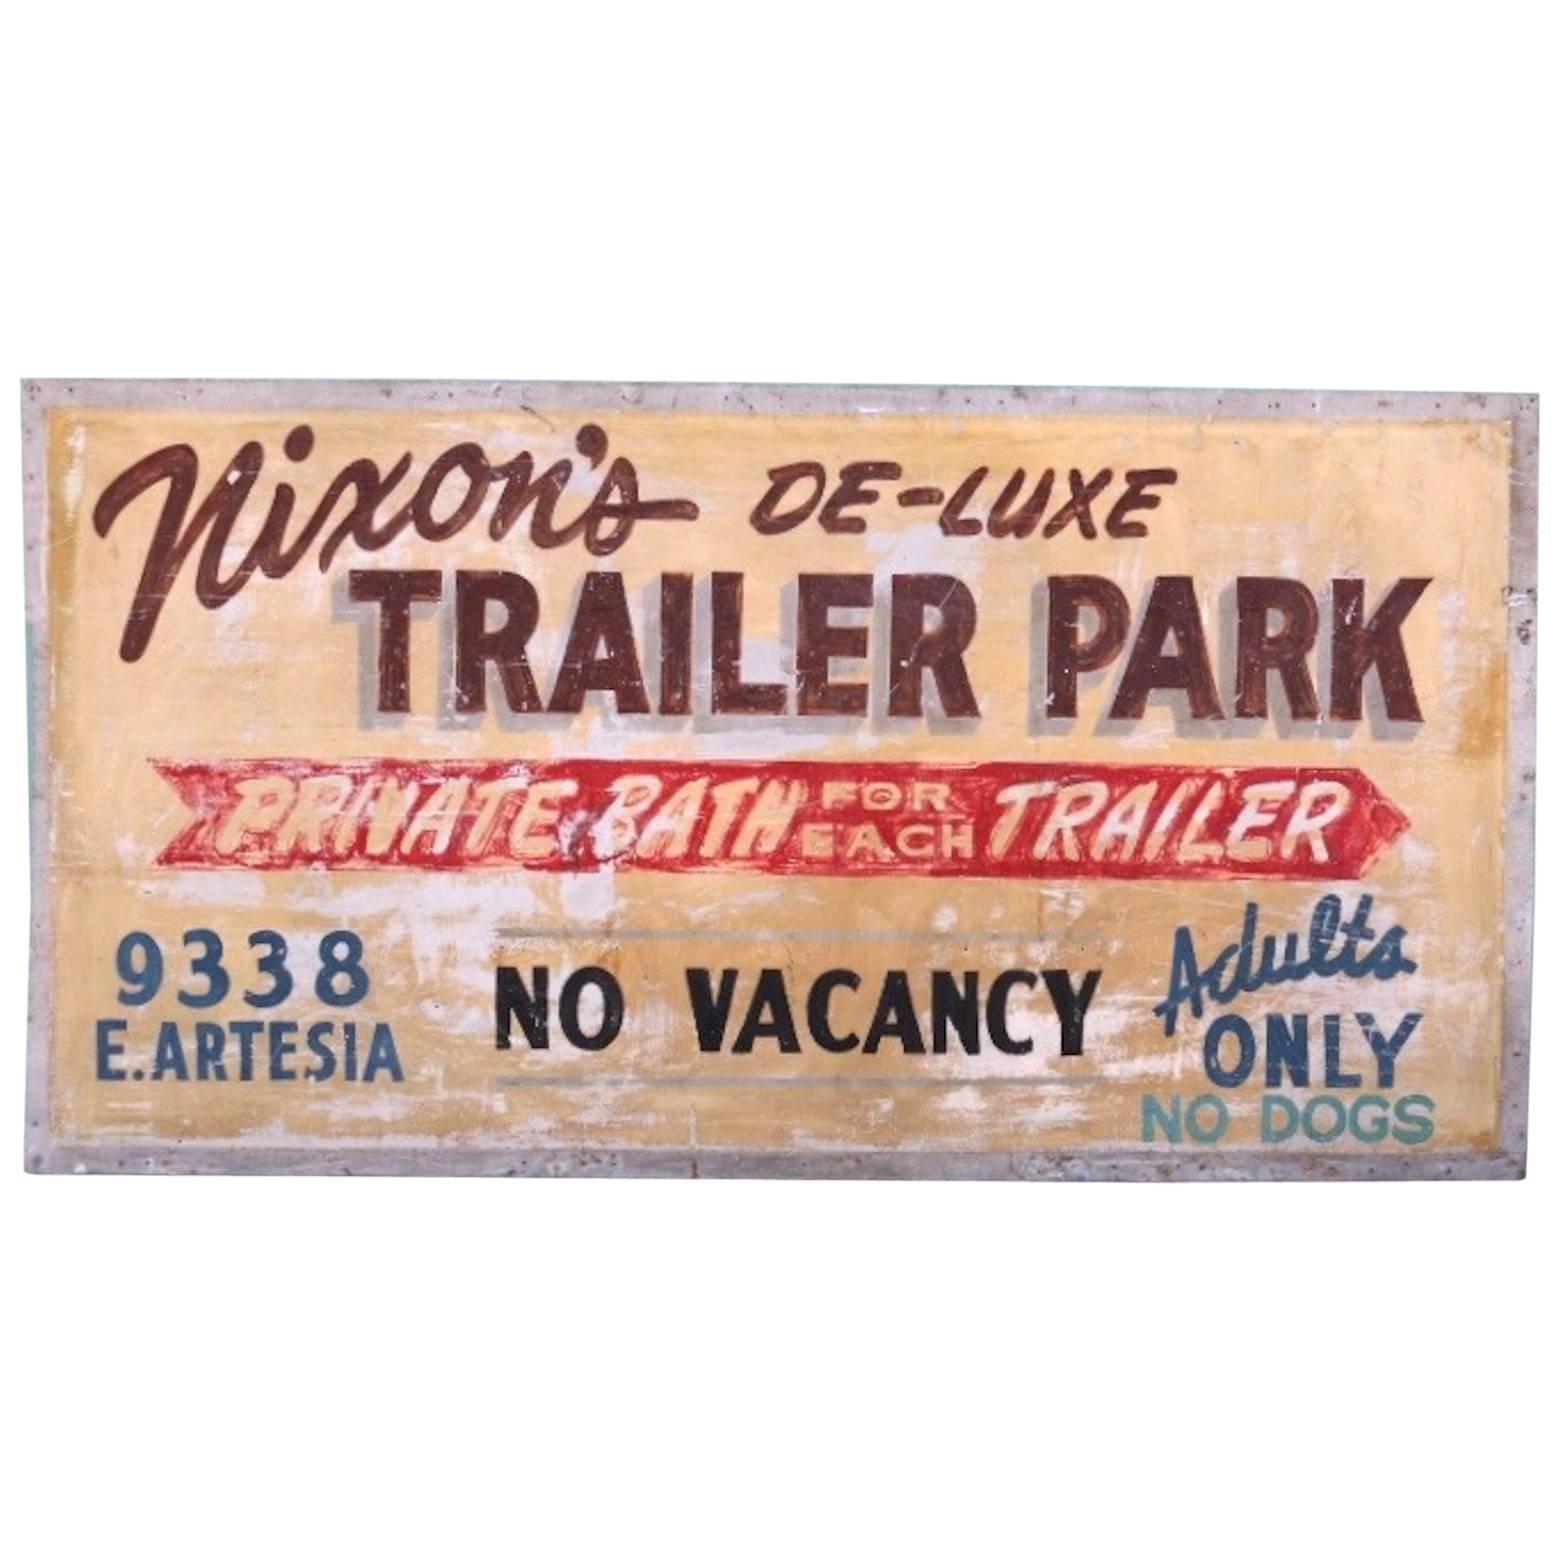 1950s Trailer Park Sign, Bellflower California, All Original, Double-Sided